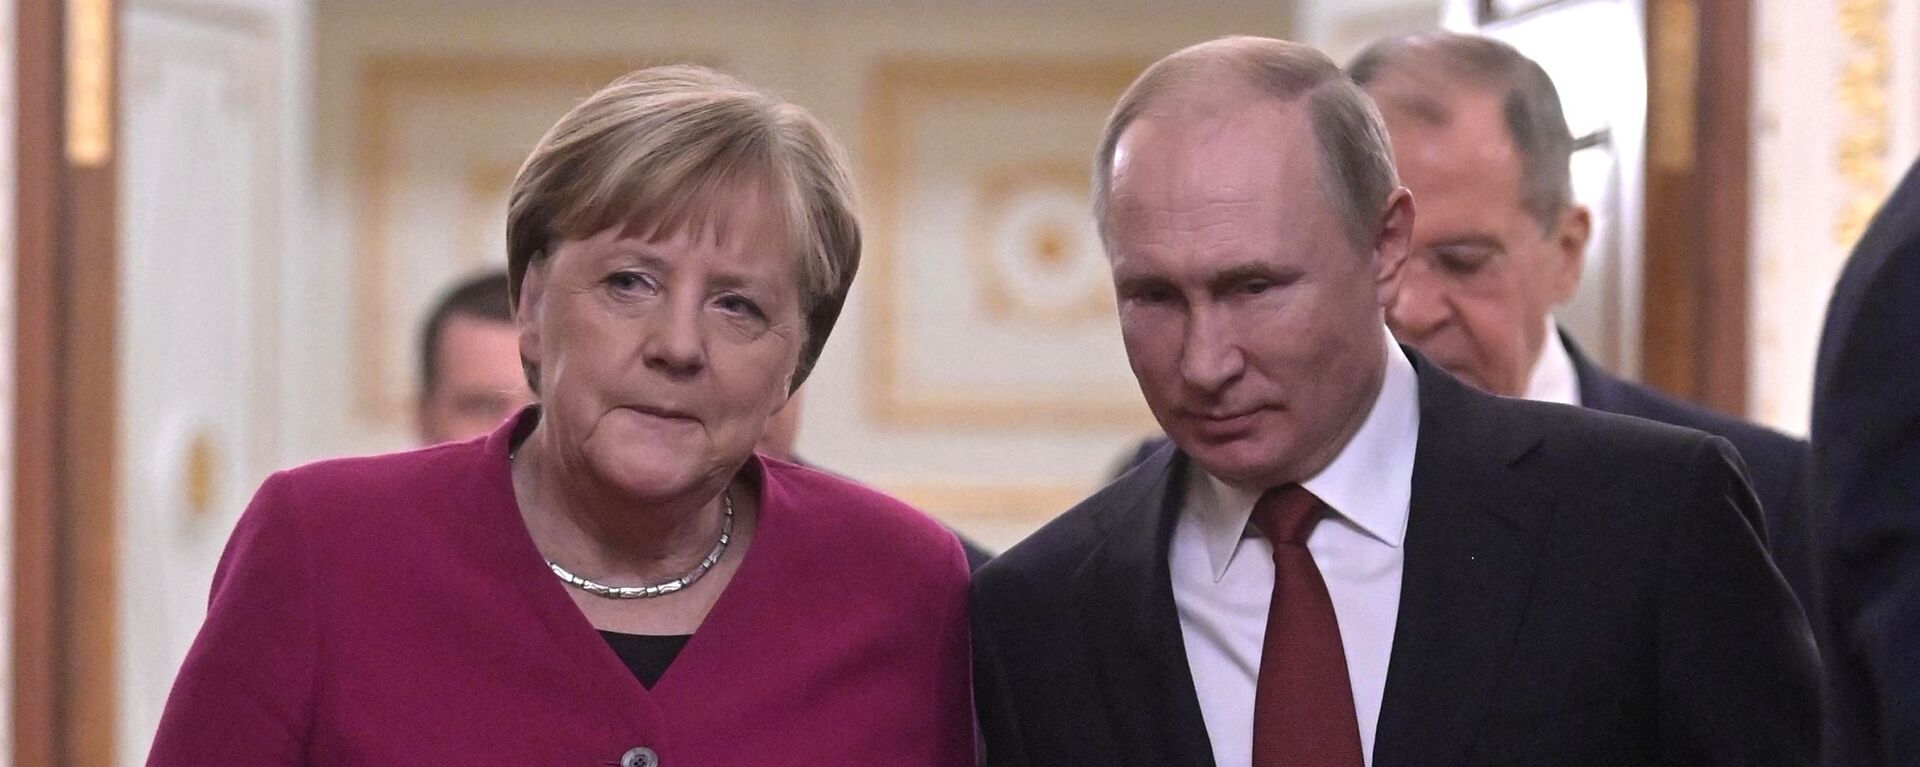 Rusijos prezidento Vladimiro Putino susitikimas su Vokietijos kanclere Angela Merkel - Sputnik Lietuva, 1920, 30.07.2021